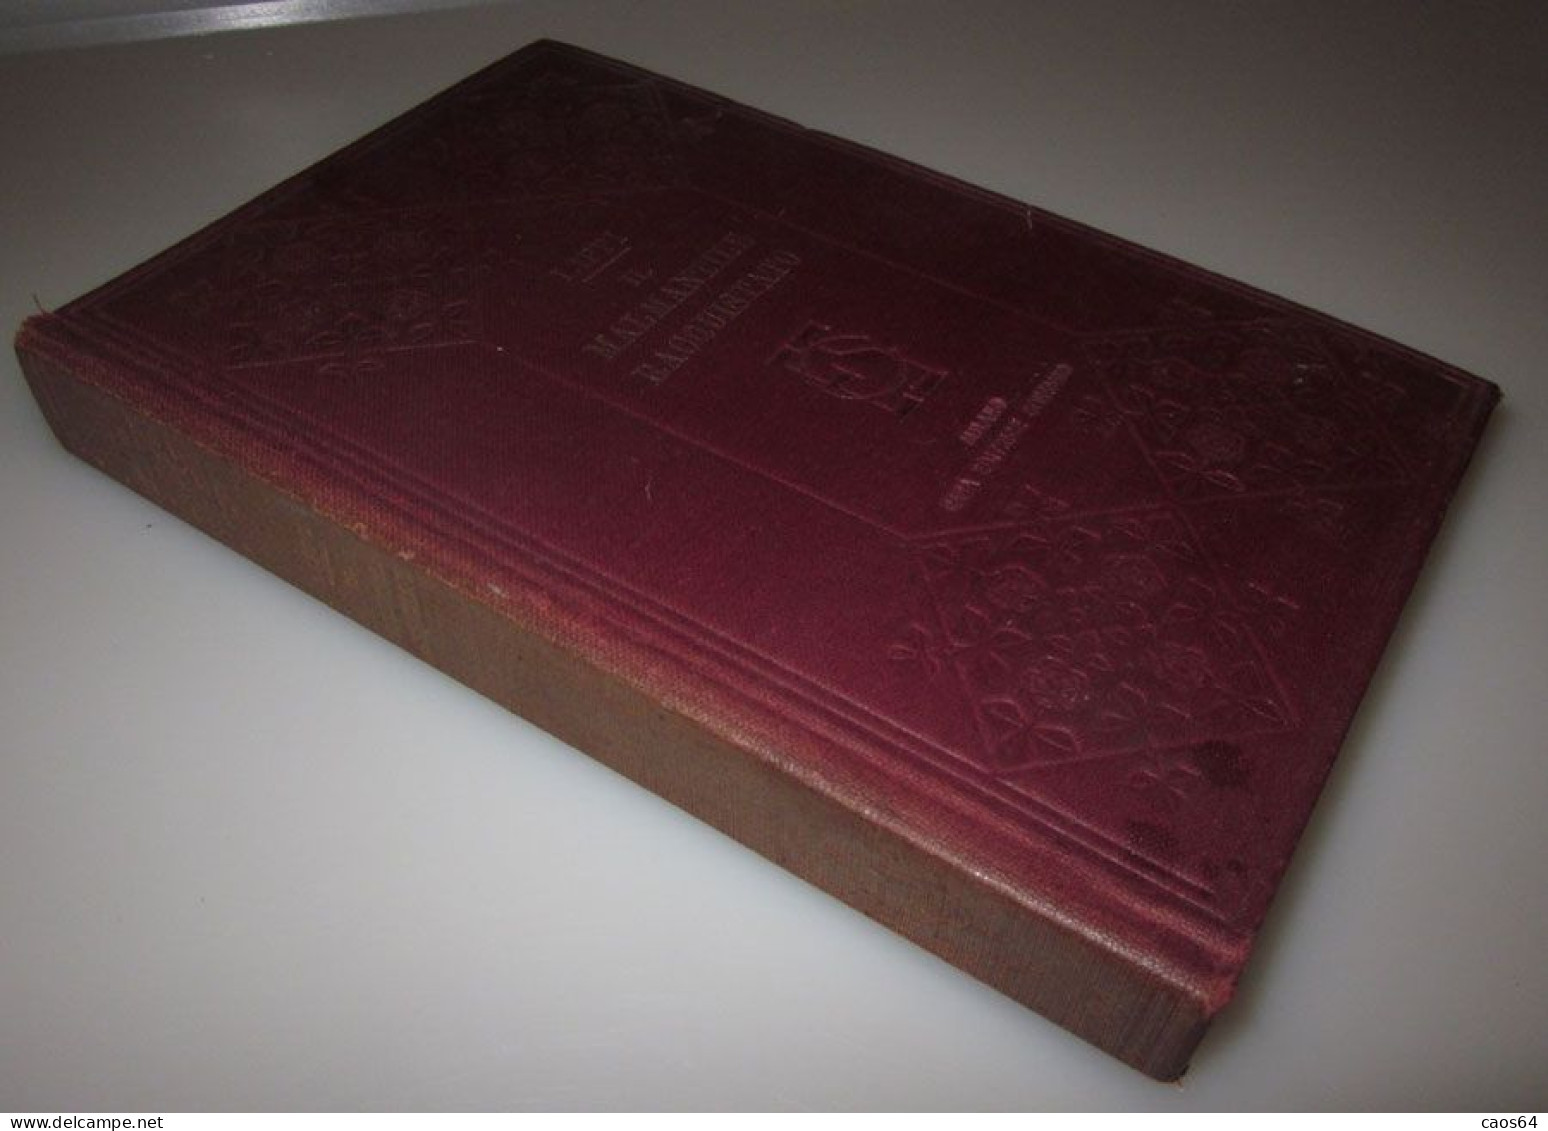 Lippi Il Malmantile Racquistato Sonzogno 1910 Volume Unico - Alte Bücher